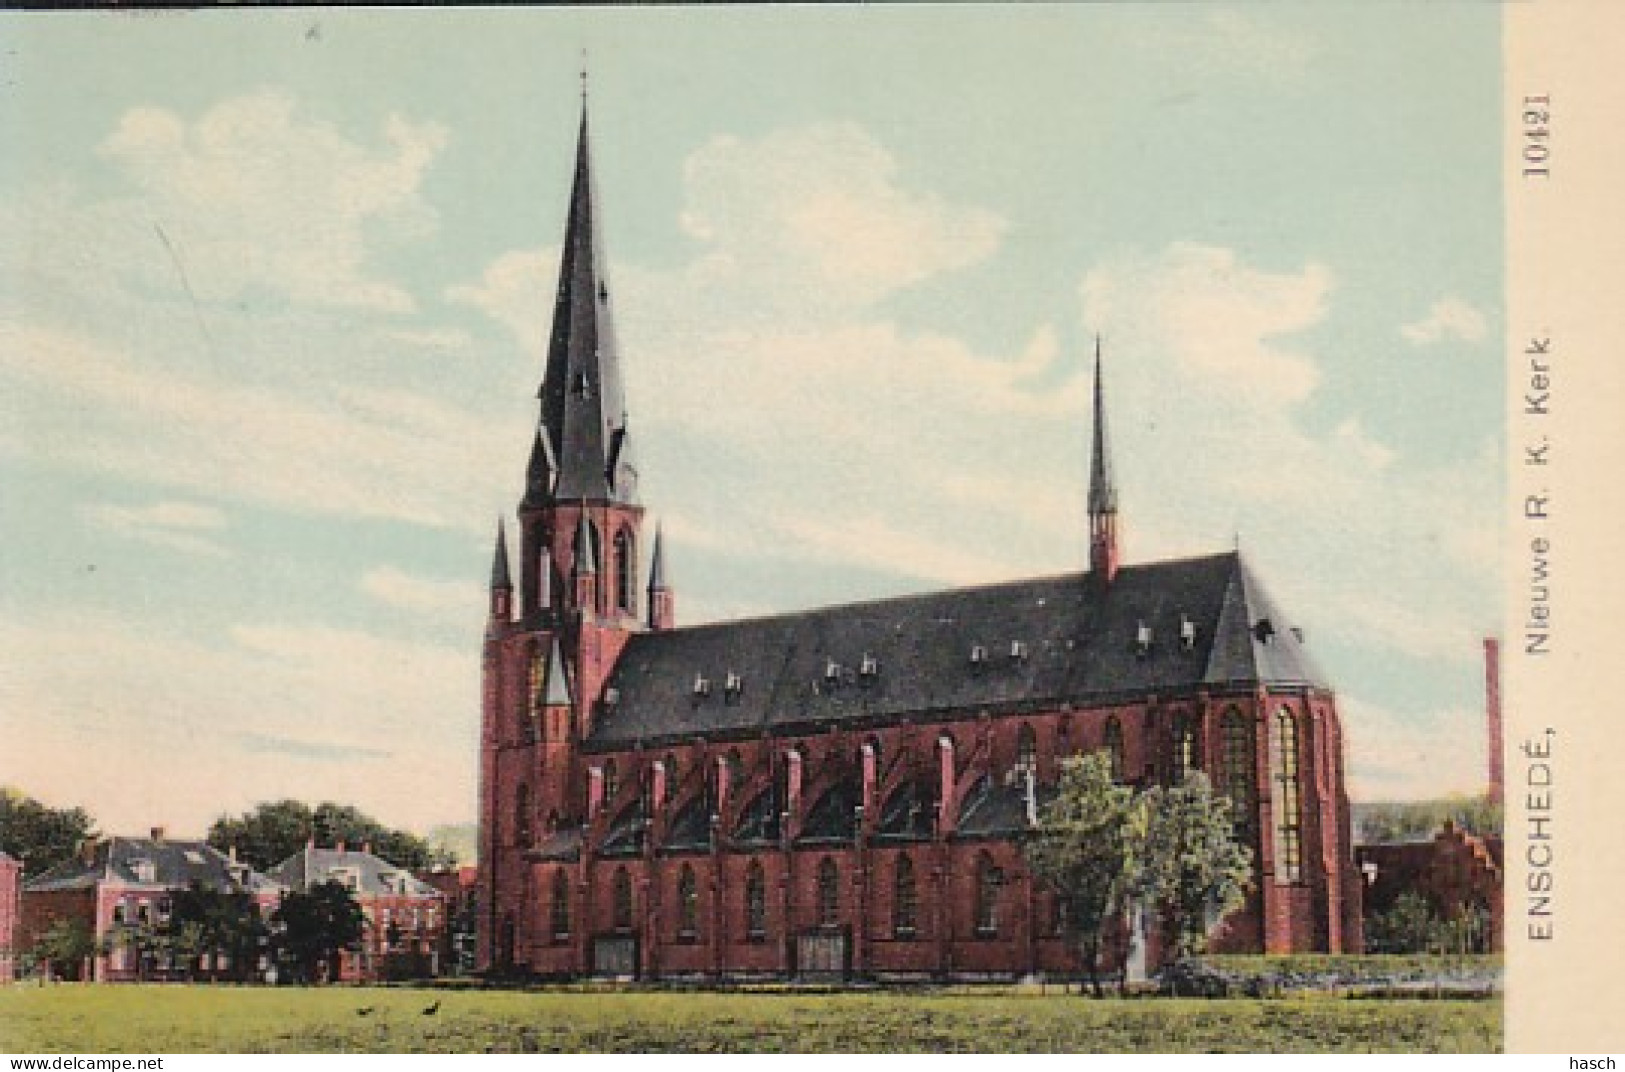 481292Enschede, Nieuwe R. K. Kerk. - Enschede